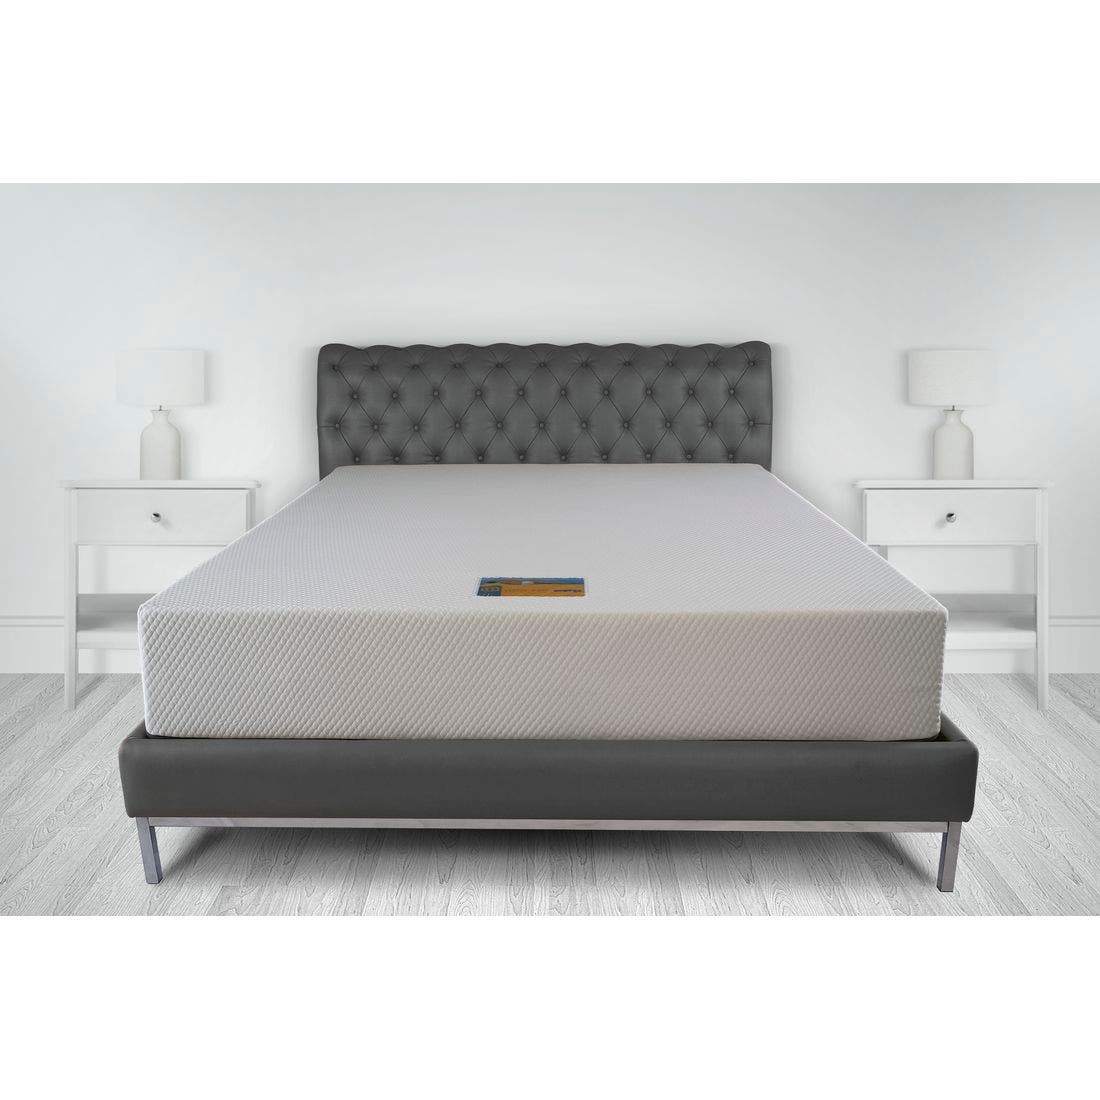 39015040-mattress-bedding-mattresses-memory-foam-mattresses-31